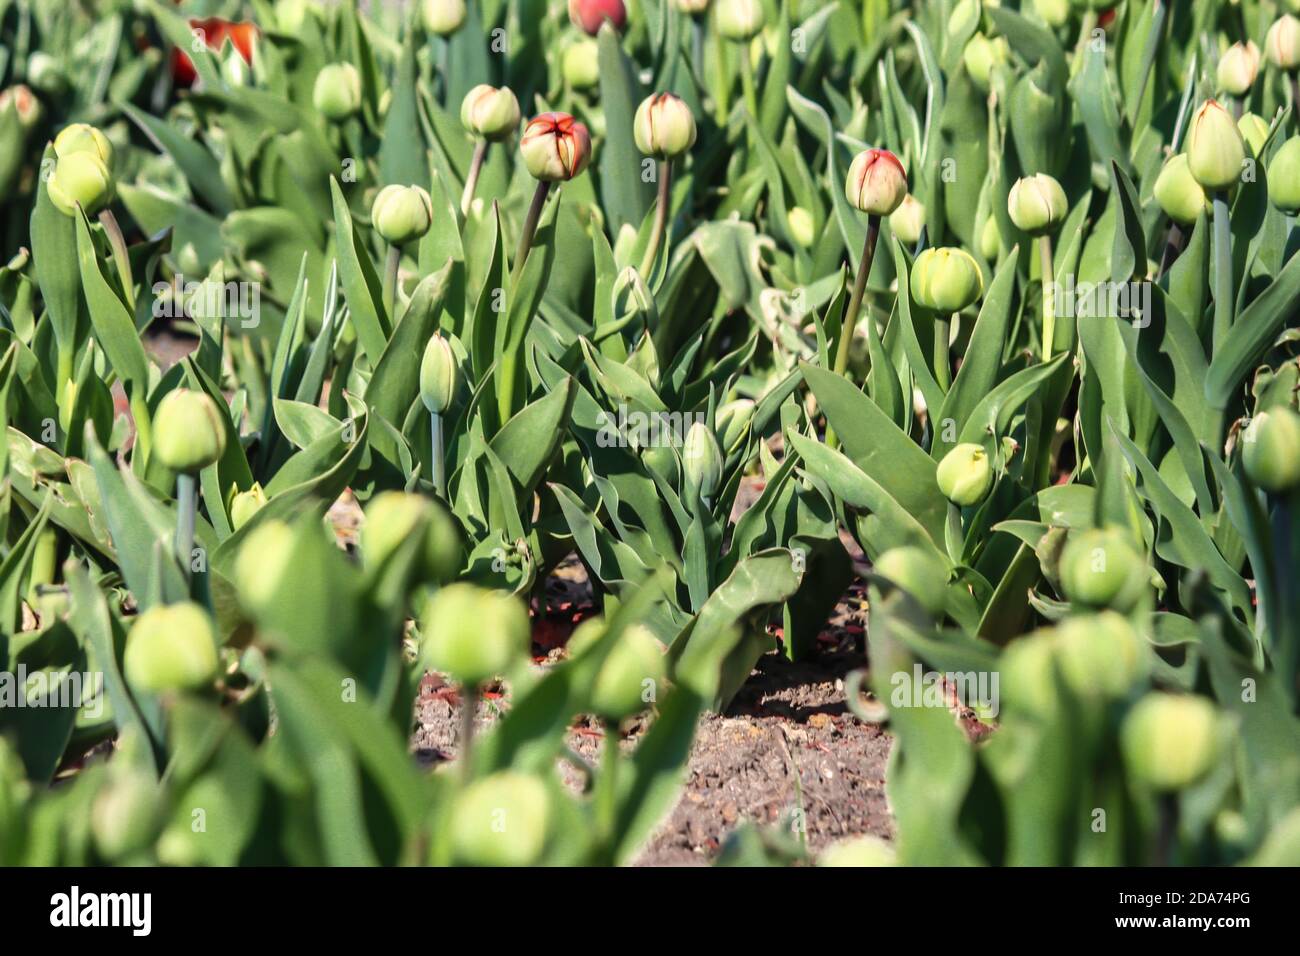 Il y a beaucoup de tiges et de bourgeons de tulipes rouges et jaunes. Gros plan. Un bon fond pour un site sur les fleurs, la floriculture, l'art Banque D'Images